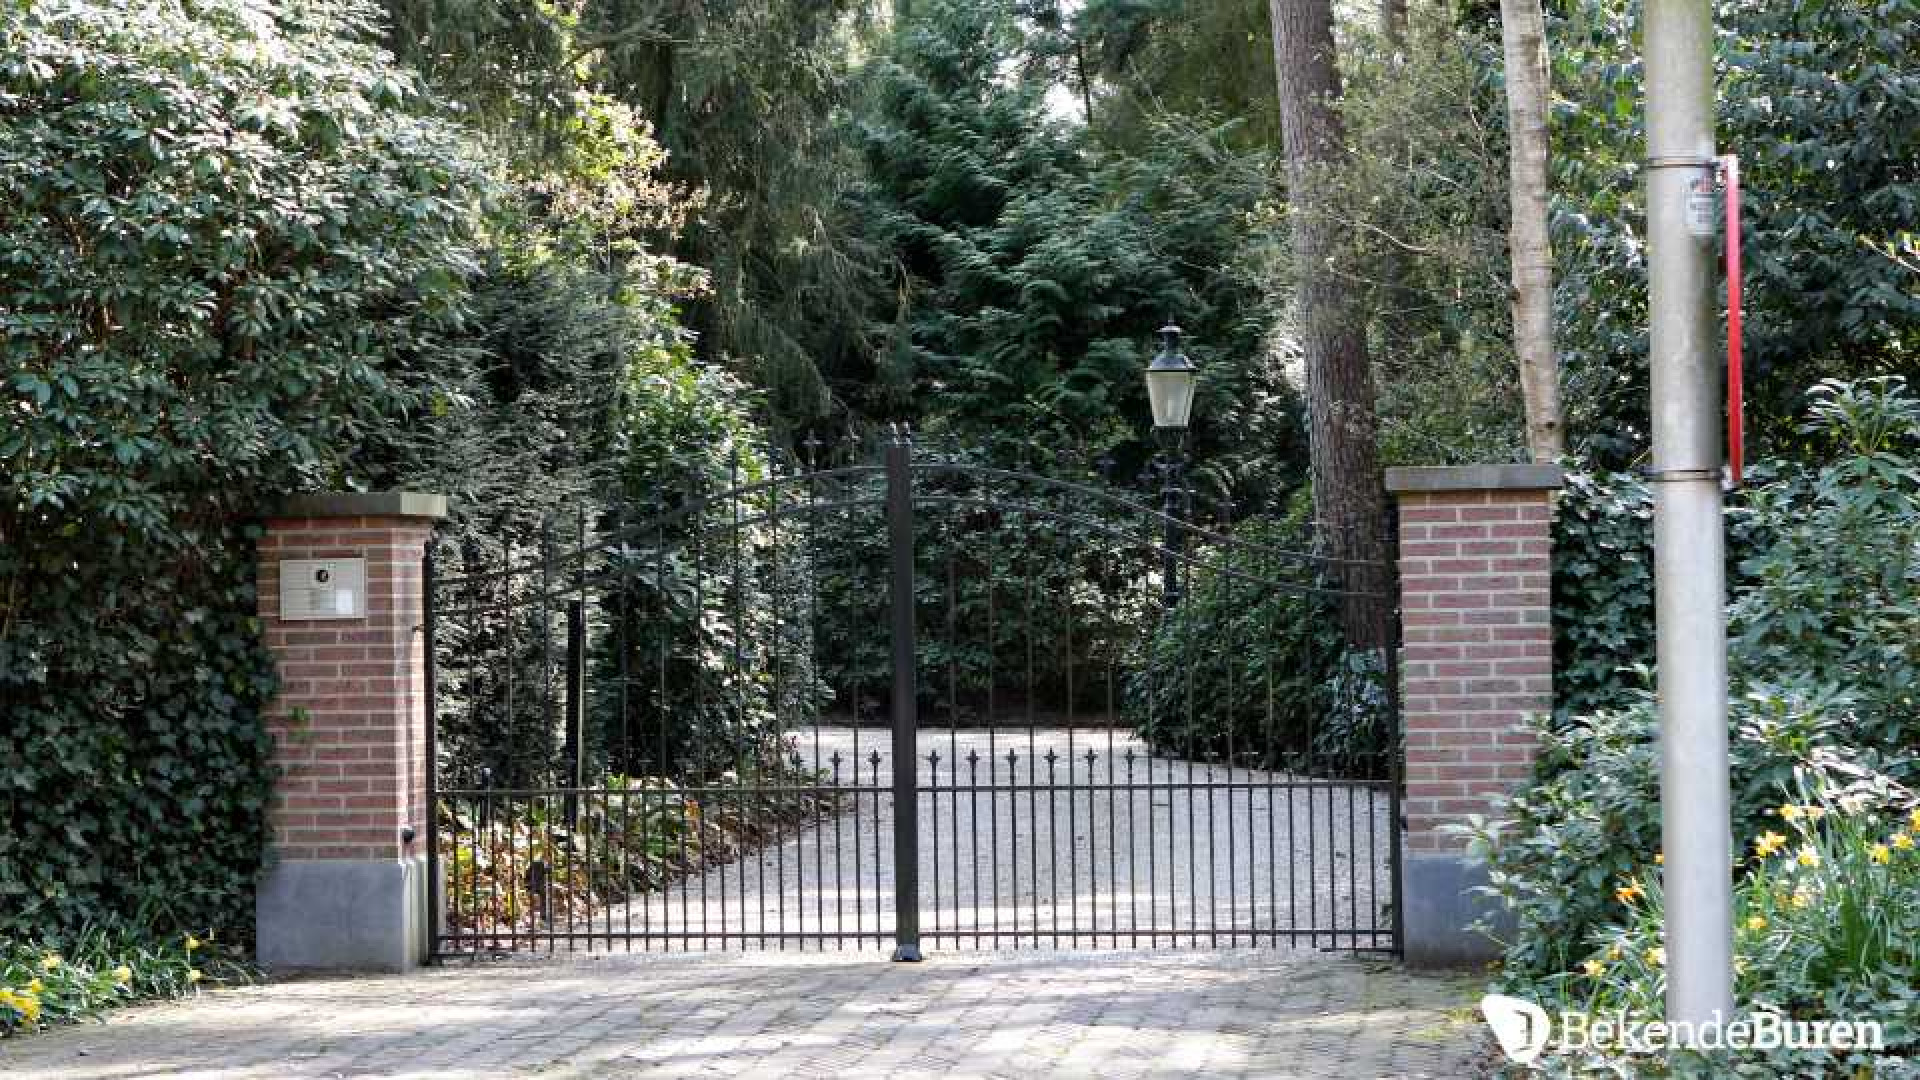 Prinses Irene koopt kapitale villa in Doorn. Zie foto's 6